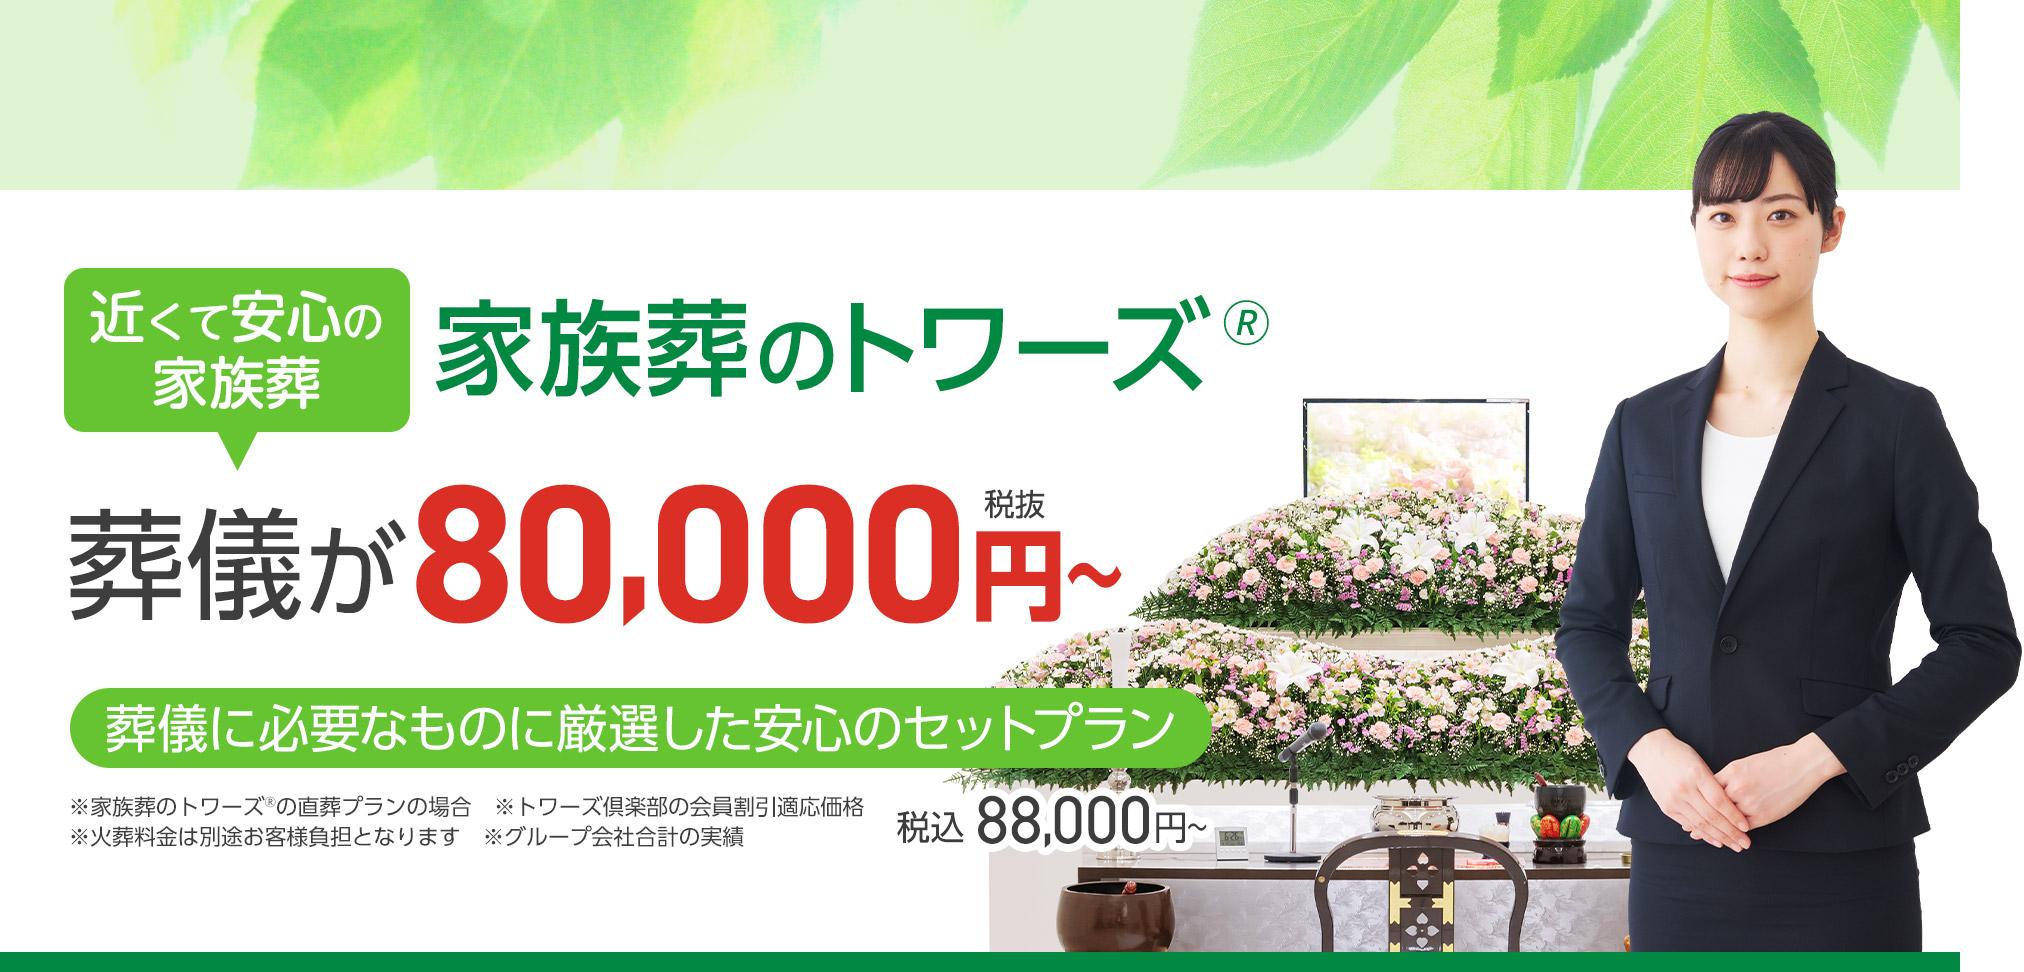 静岡市で葬儀・葬式・家族葬をお探しなら家族葬のトワーズ 近くて安心の葬儀・家族葬が税抜120,000円